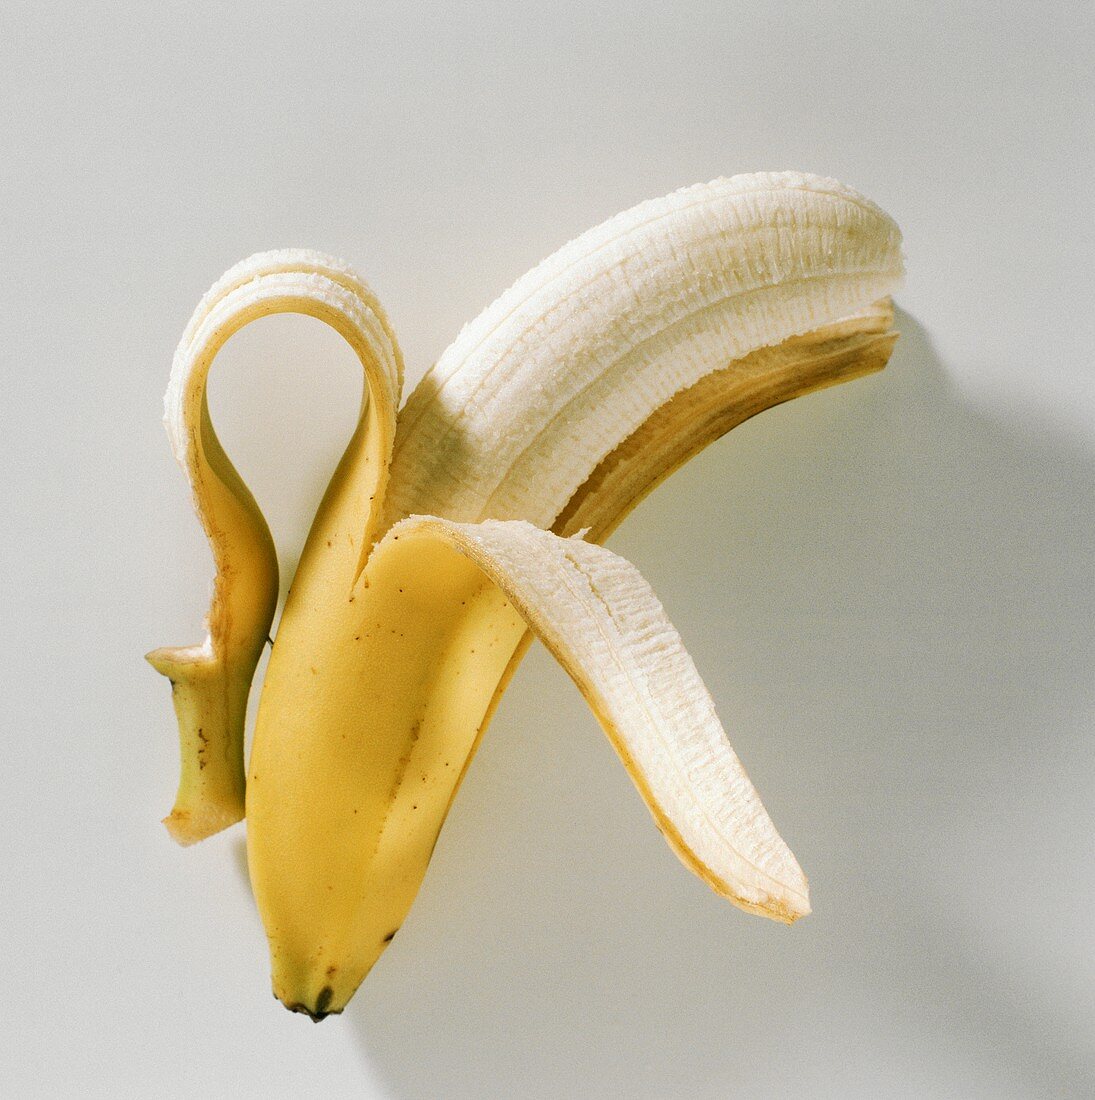 One Partially Peeled Banana